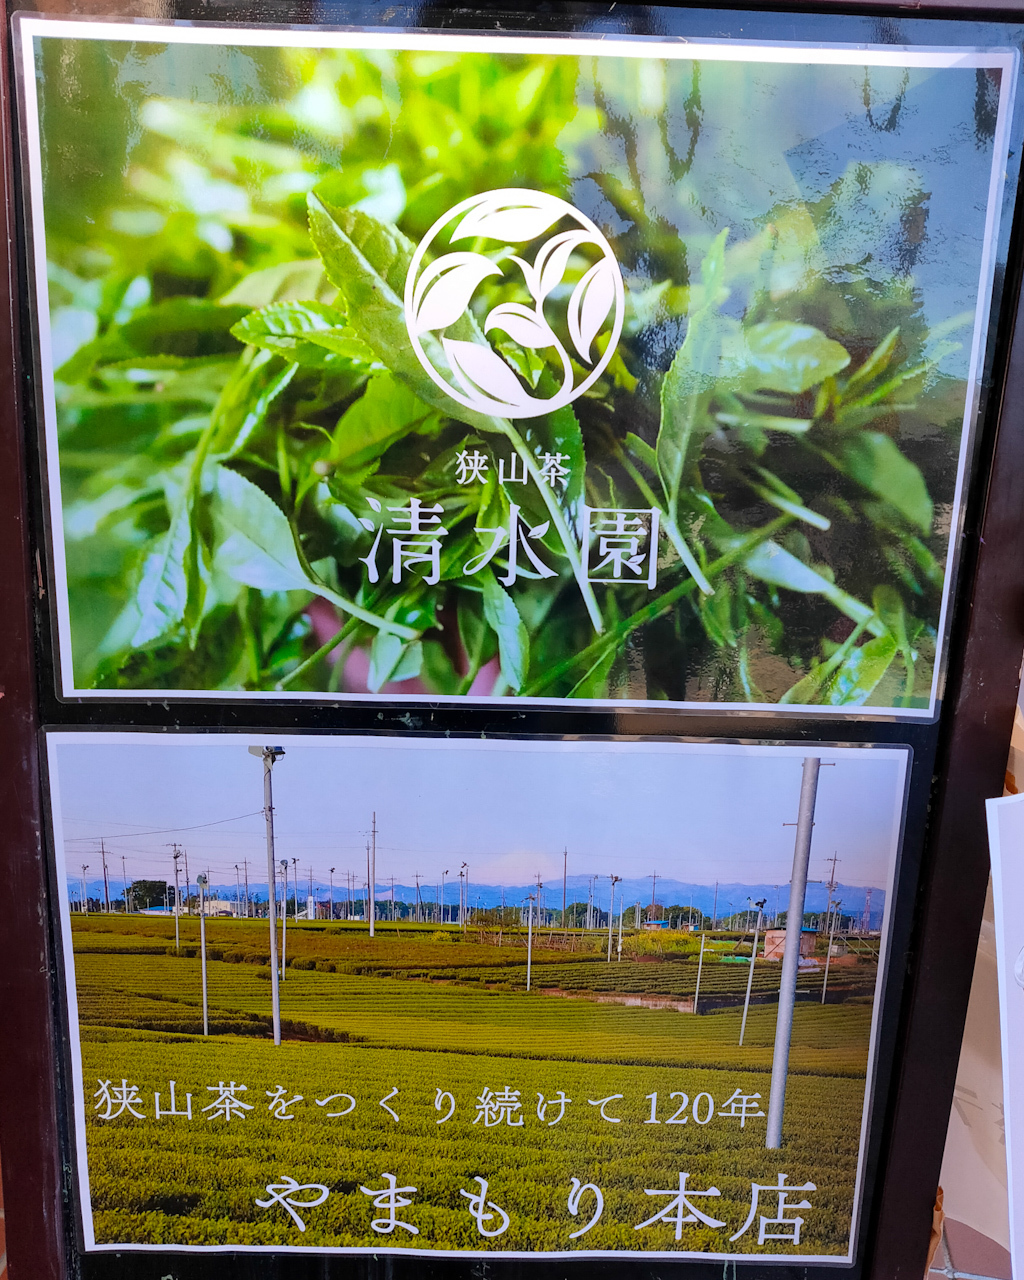 埼玉のお茶・狭山茶農家の「清水園」さんと「やまもり本店」さんの茶葉を使用した緑茶ラテや緑茶プリンを提供